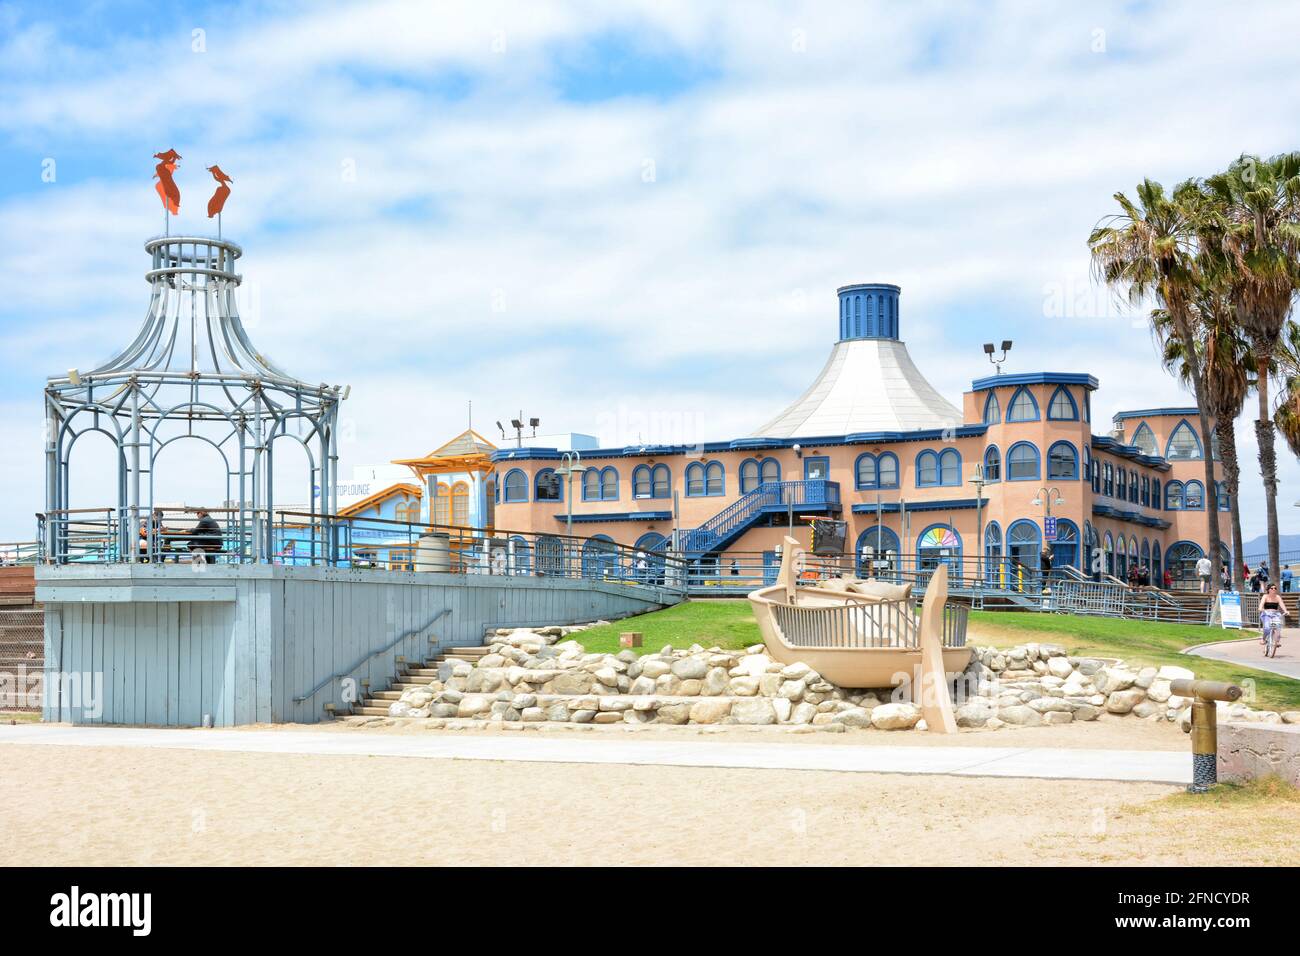 SANTA MONICA, KALIFORNIEN - 15. MAI 2021: Merry-Go-Round Gebäude vom Pier Playground aus gesehen. Stockfoto